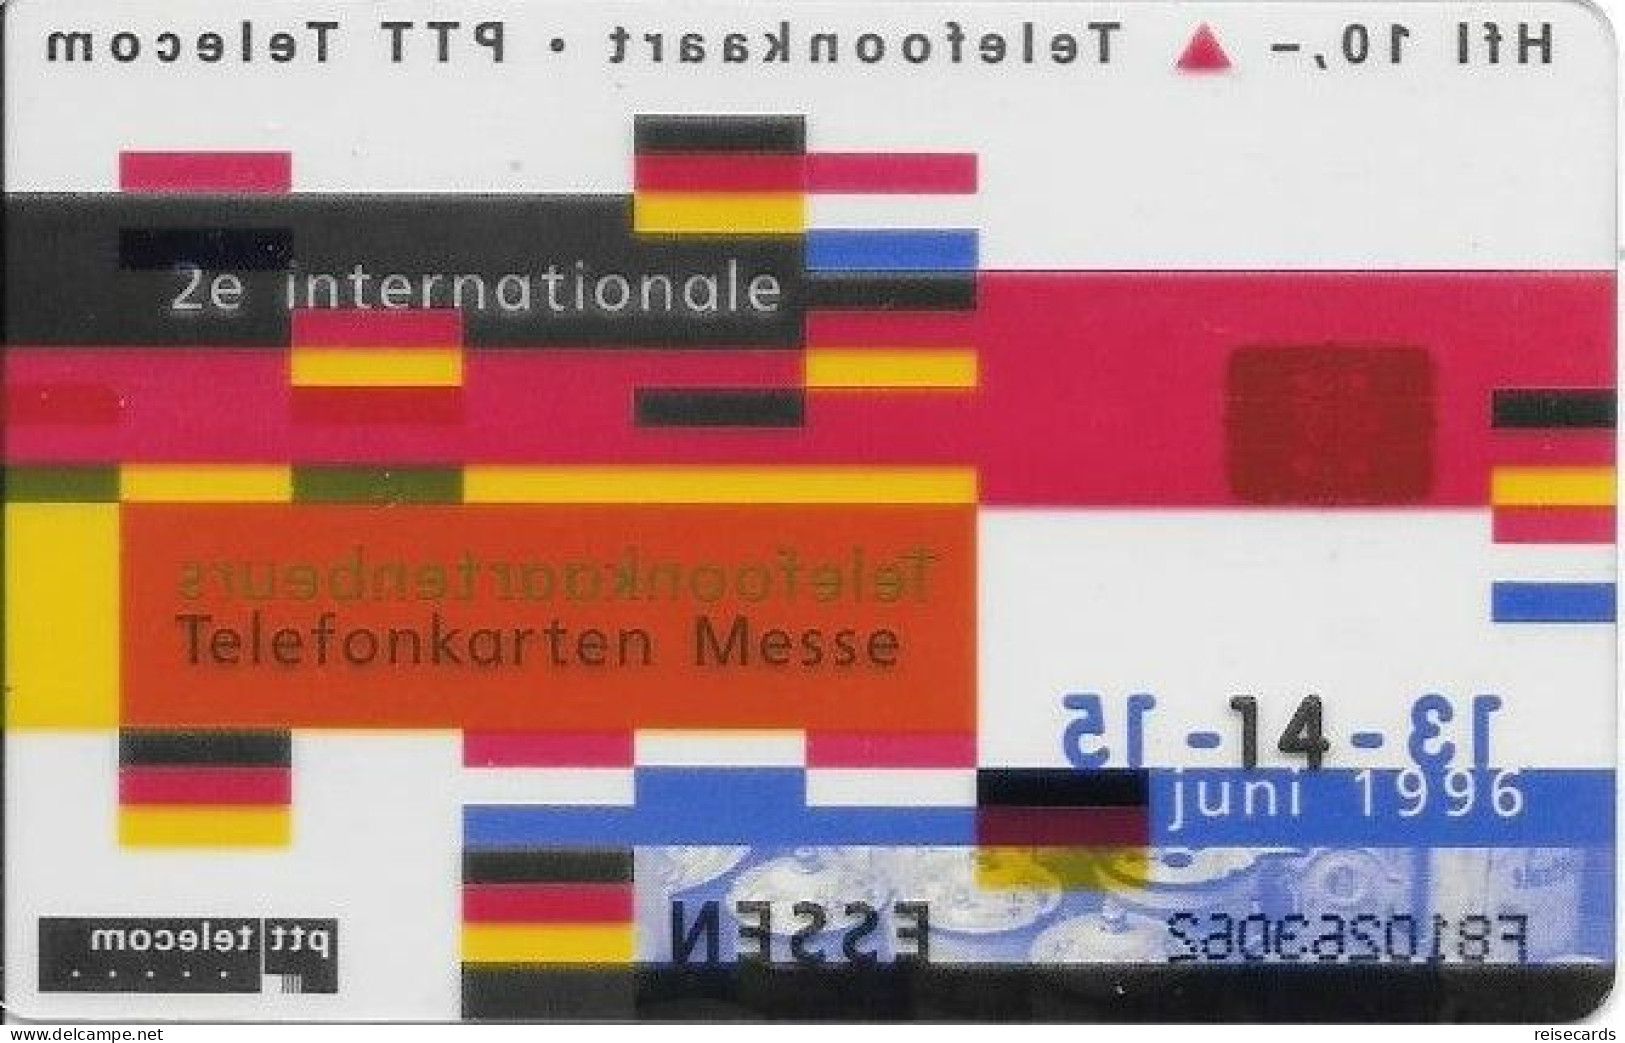 Netherlands: Ptt Telecom - 1996 Internationale Telefonkaartenbeurs Essen. Mint, Transparent - Públicas